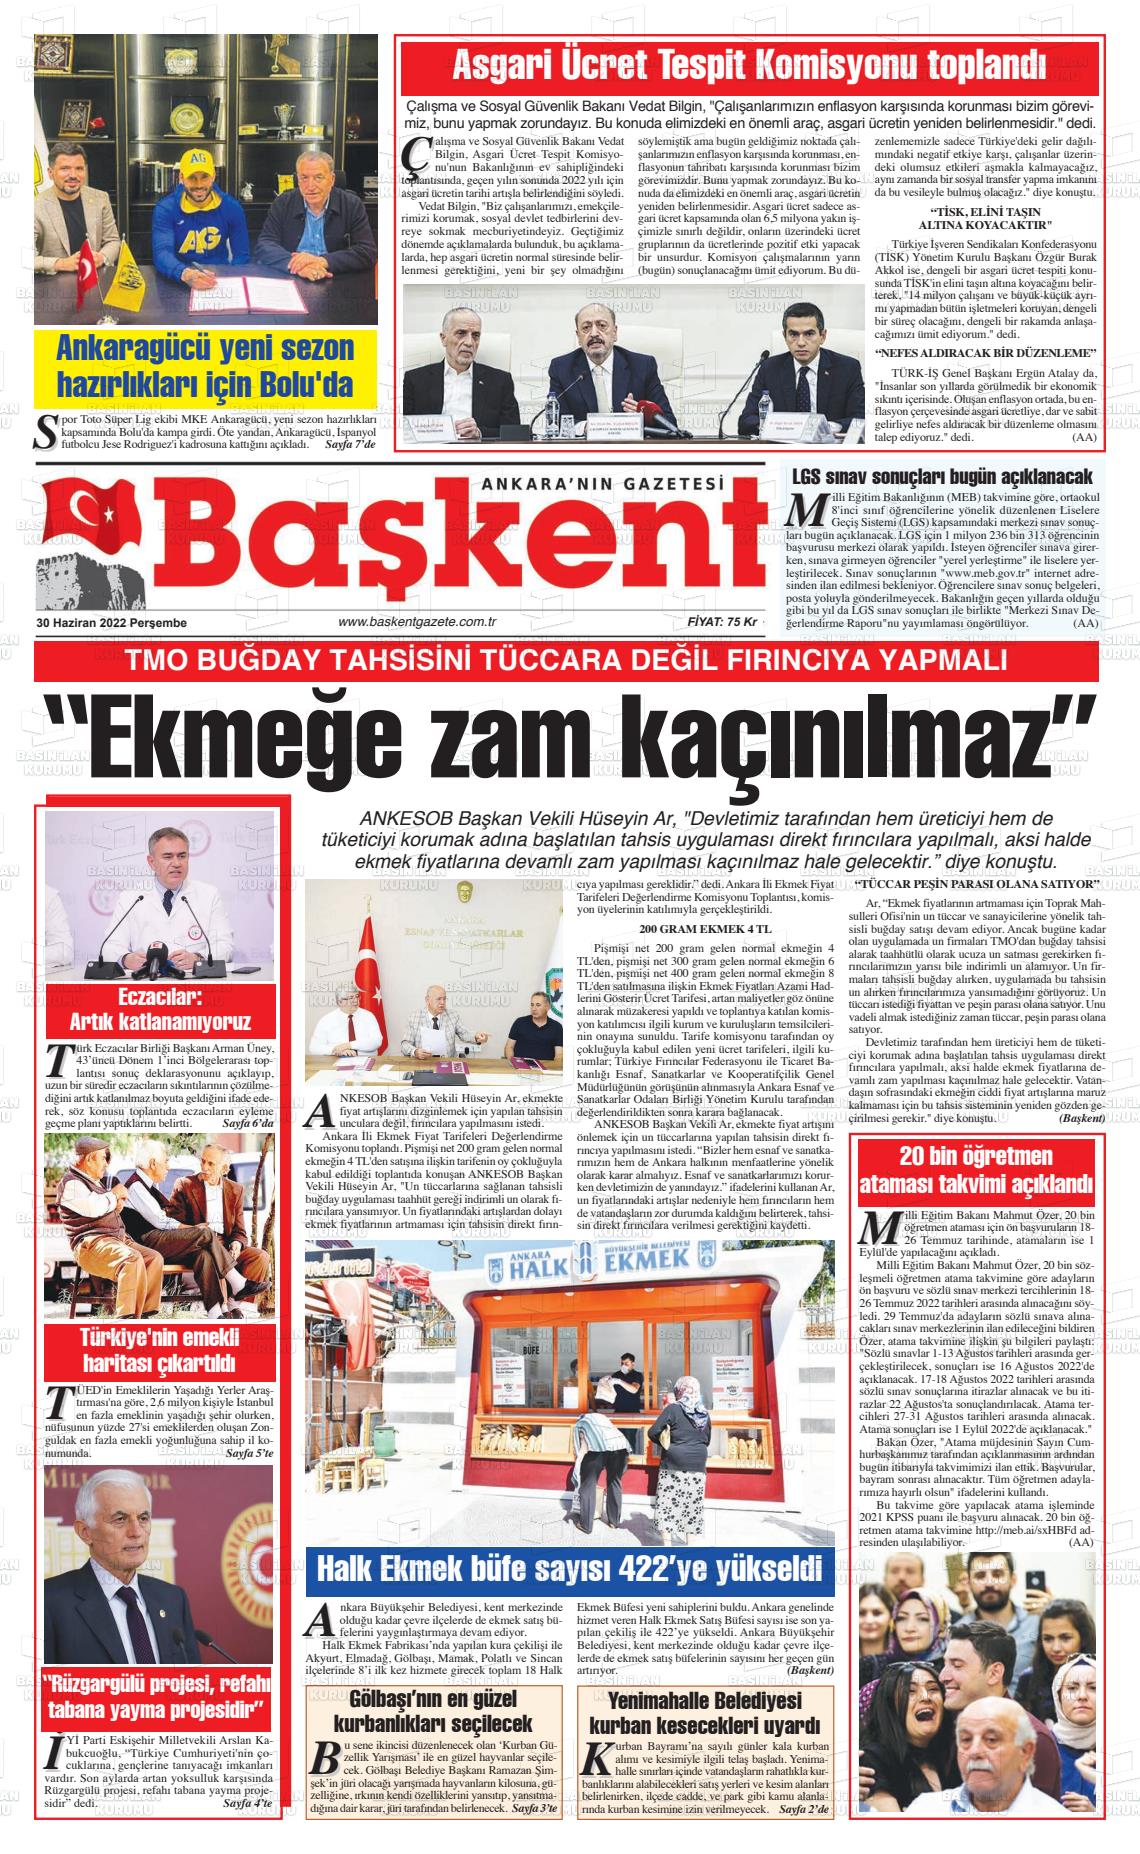 30 Haziran 2022 Ankara Başkent Gazete Manşeti